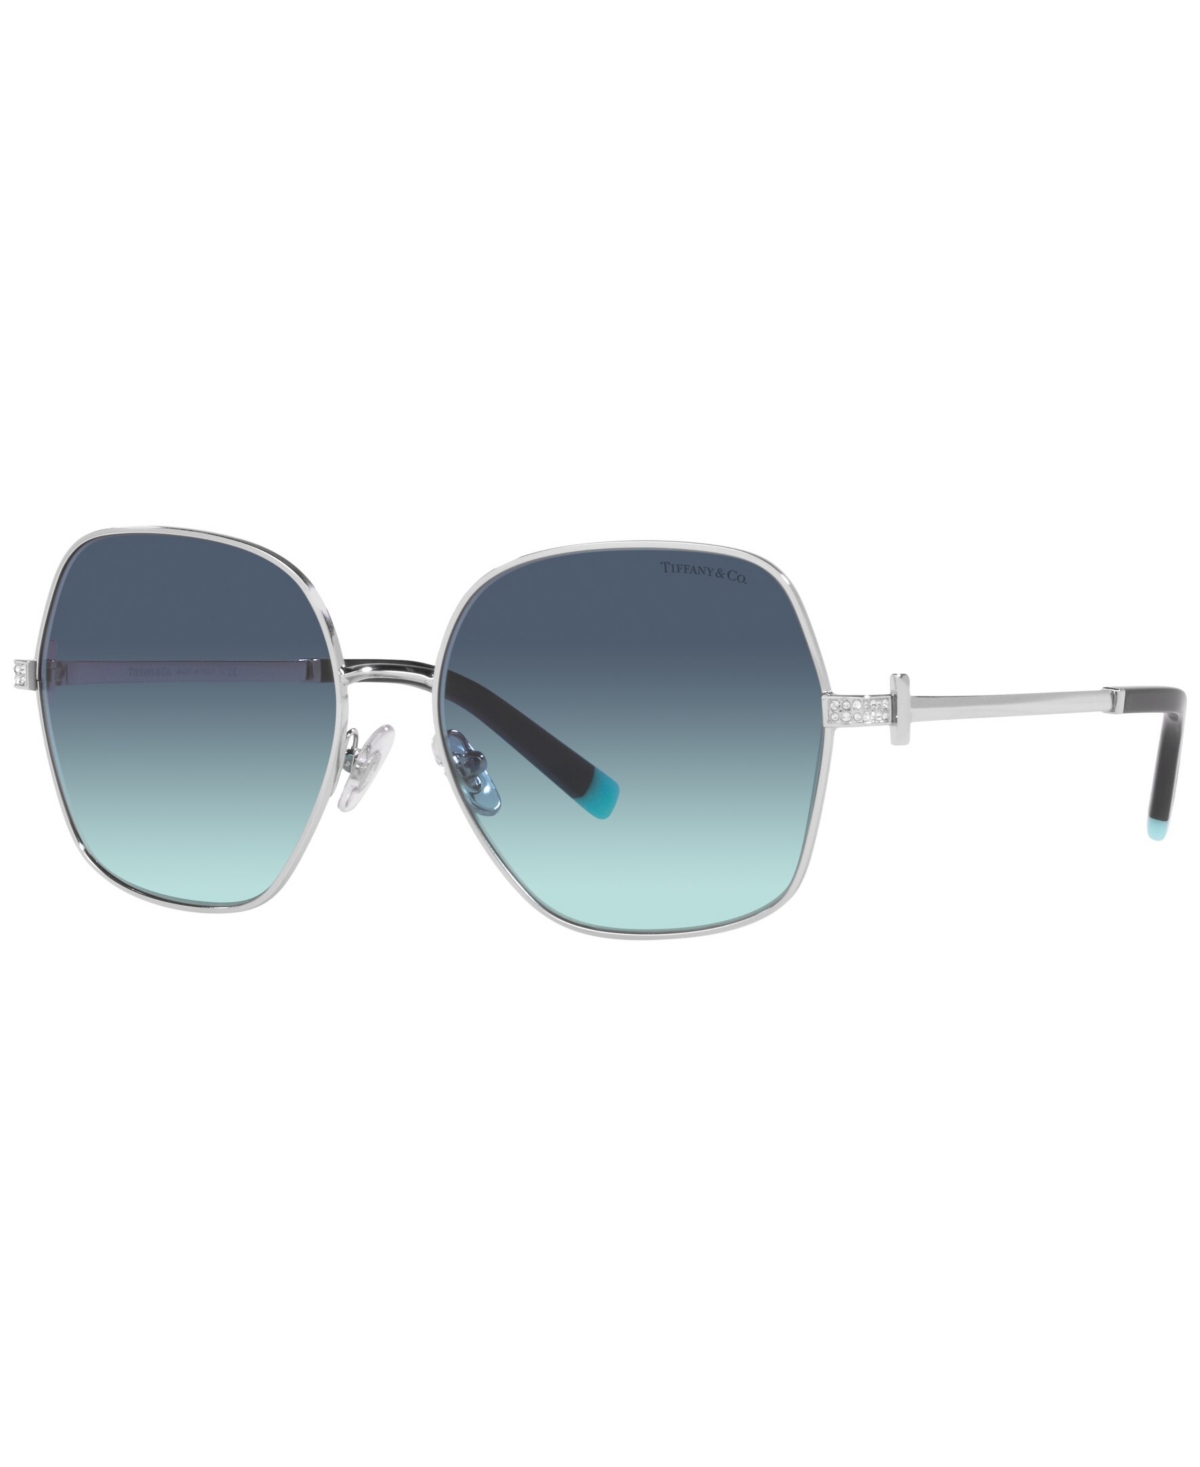 Tiffany & Co Women's Sunglasses, Tf3085b In Silver-tone